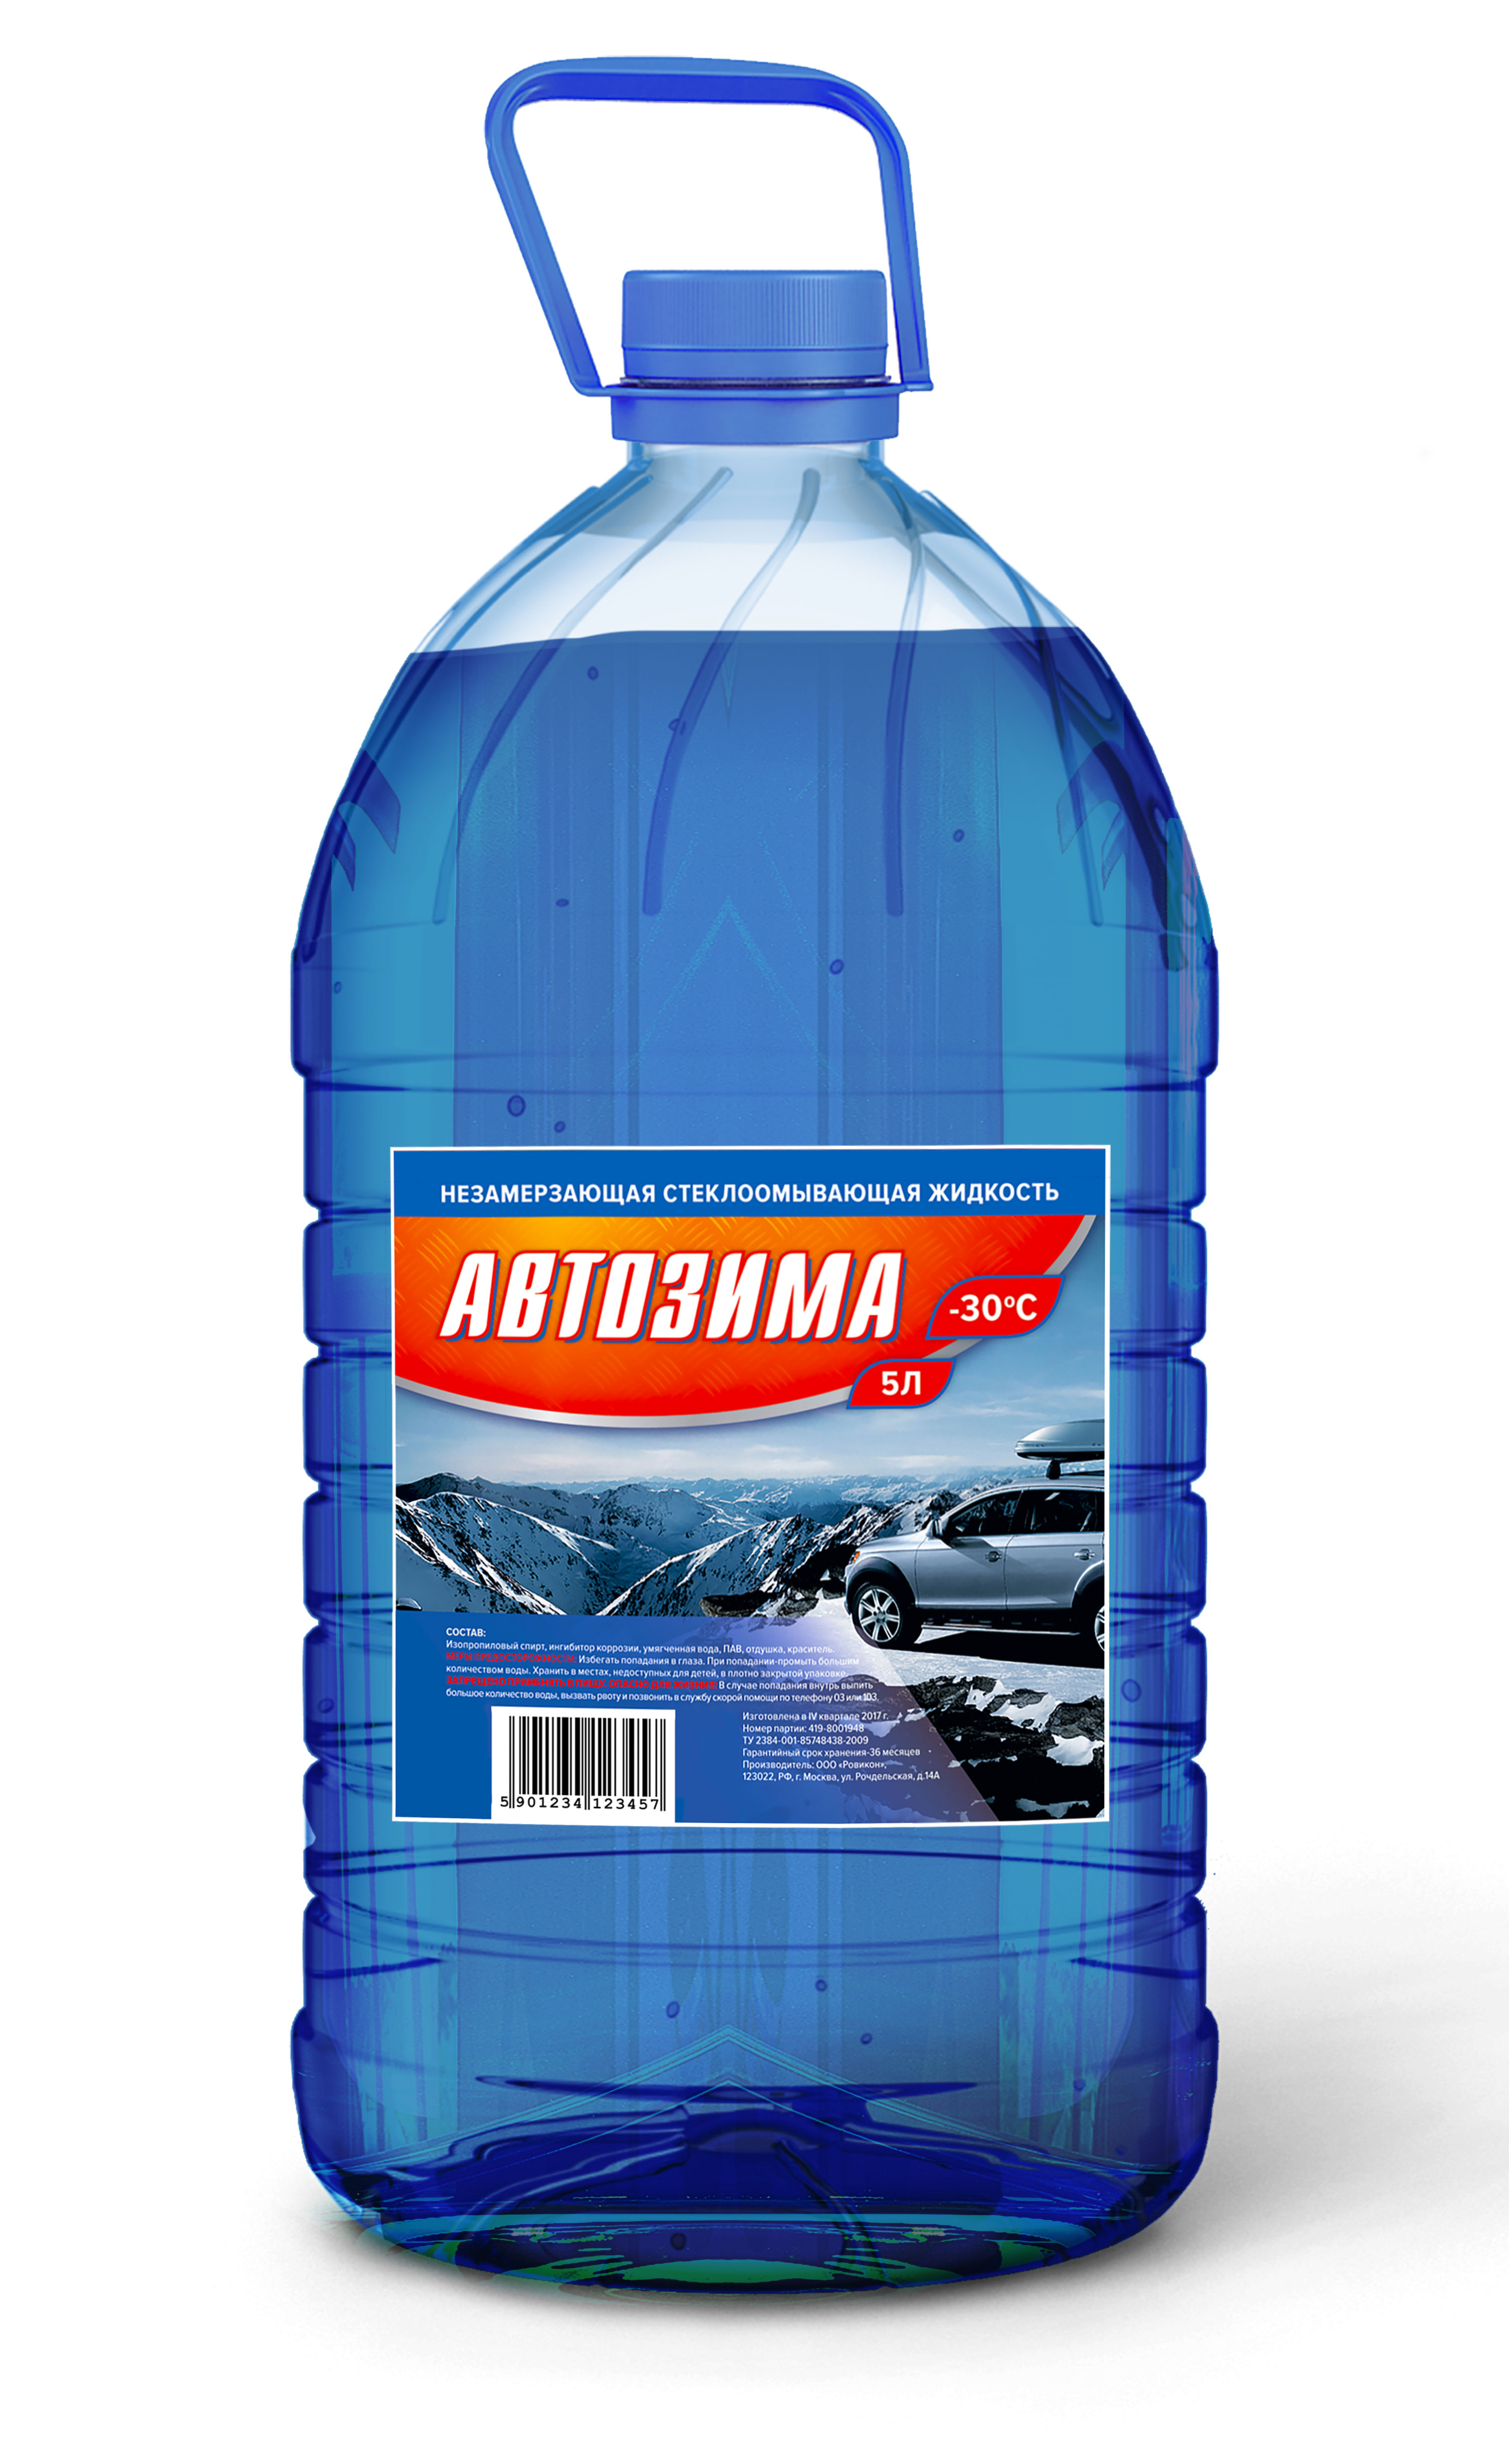 Незамерзающая жидкость Автозима | Производитель Градус 30